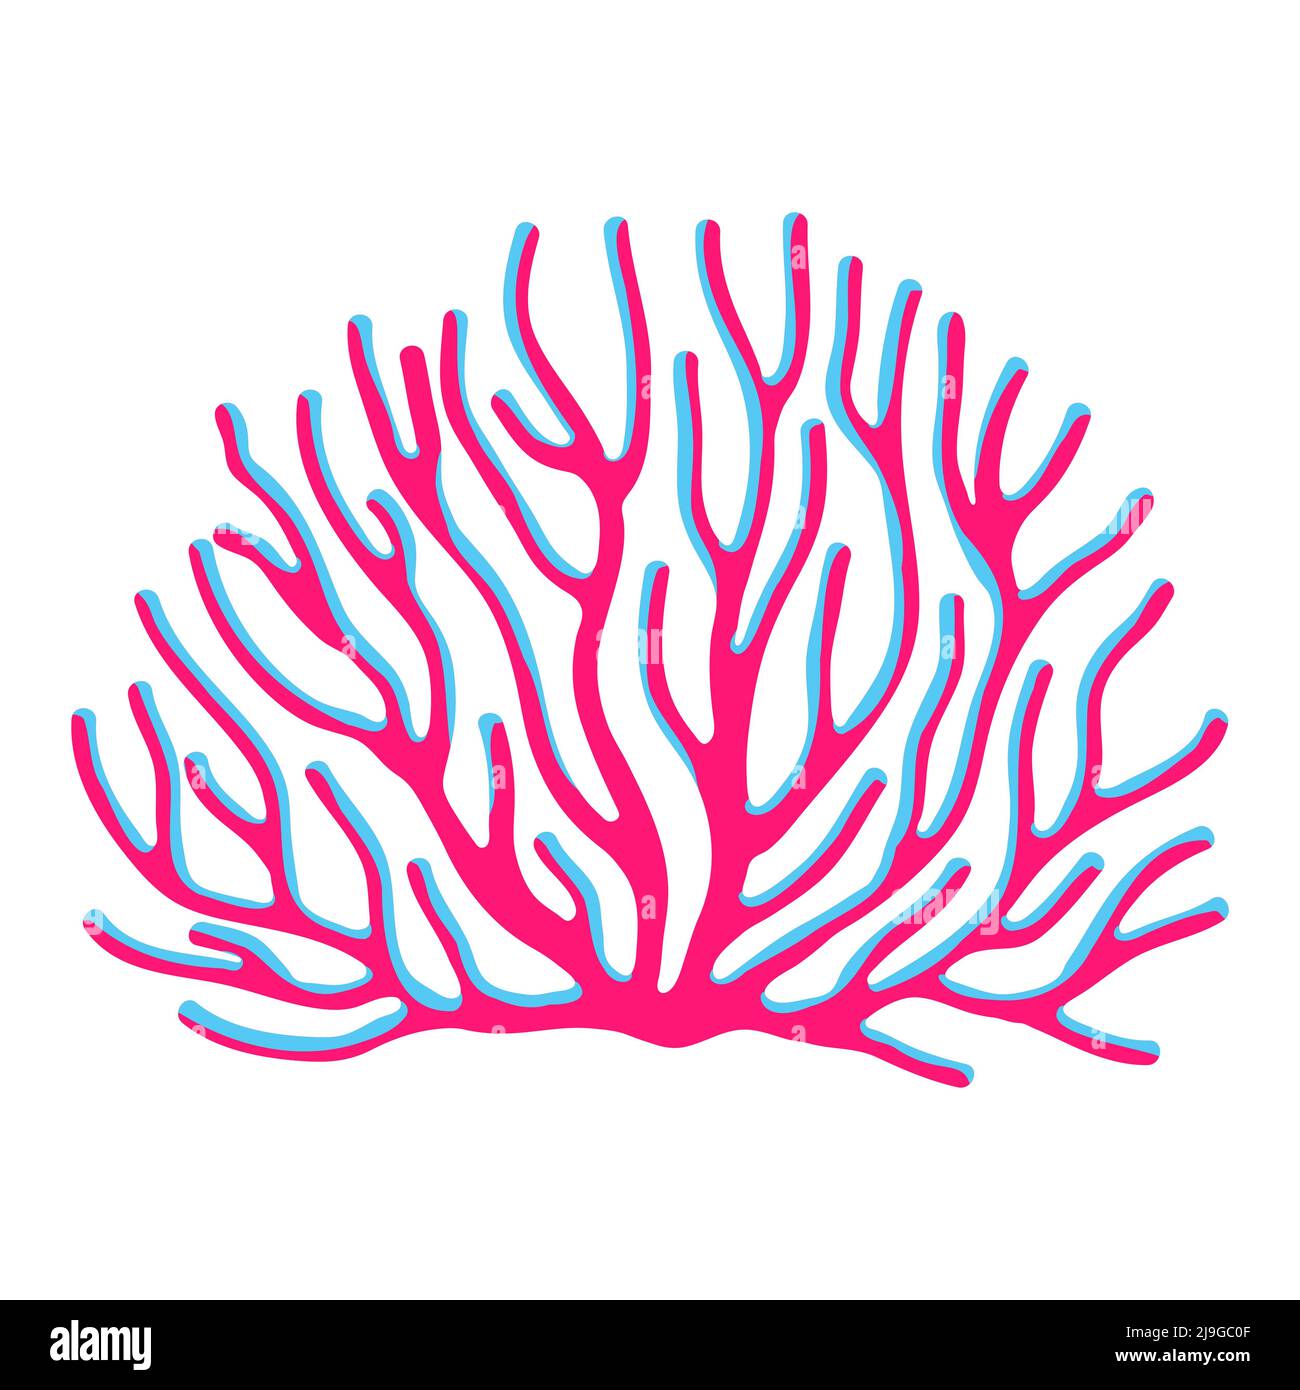 Abbildung von Meerestrauben Korallen. Meerwasseraquarium und Meeresflora. Stilisiertes Bild in hellen Farben. Stock Vektor